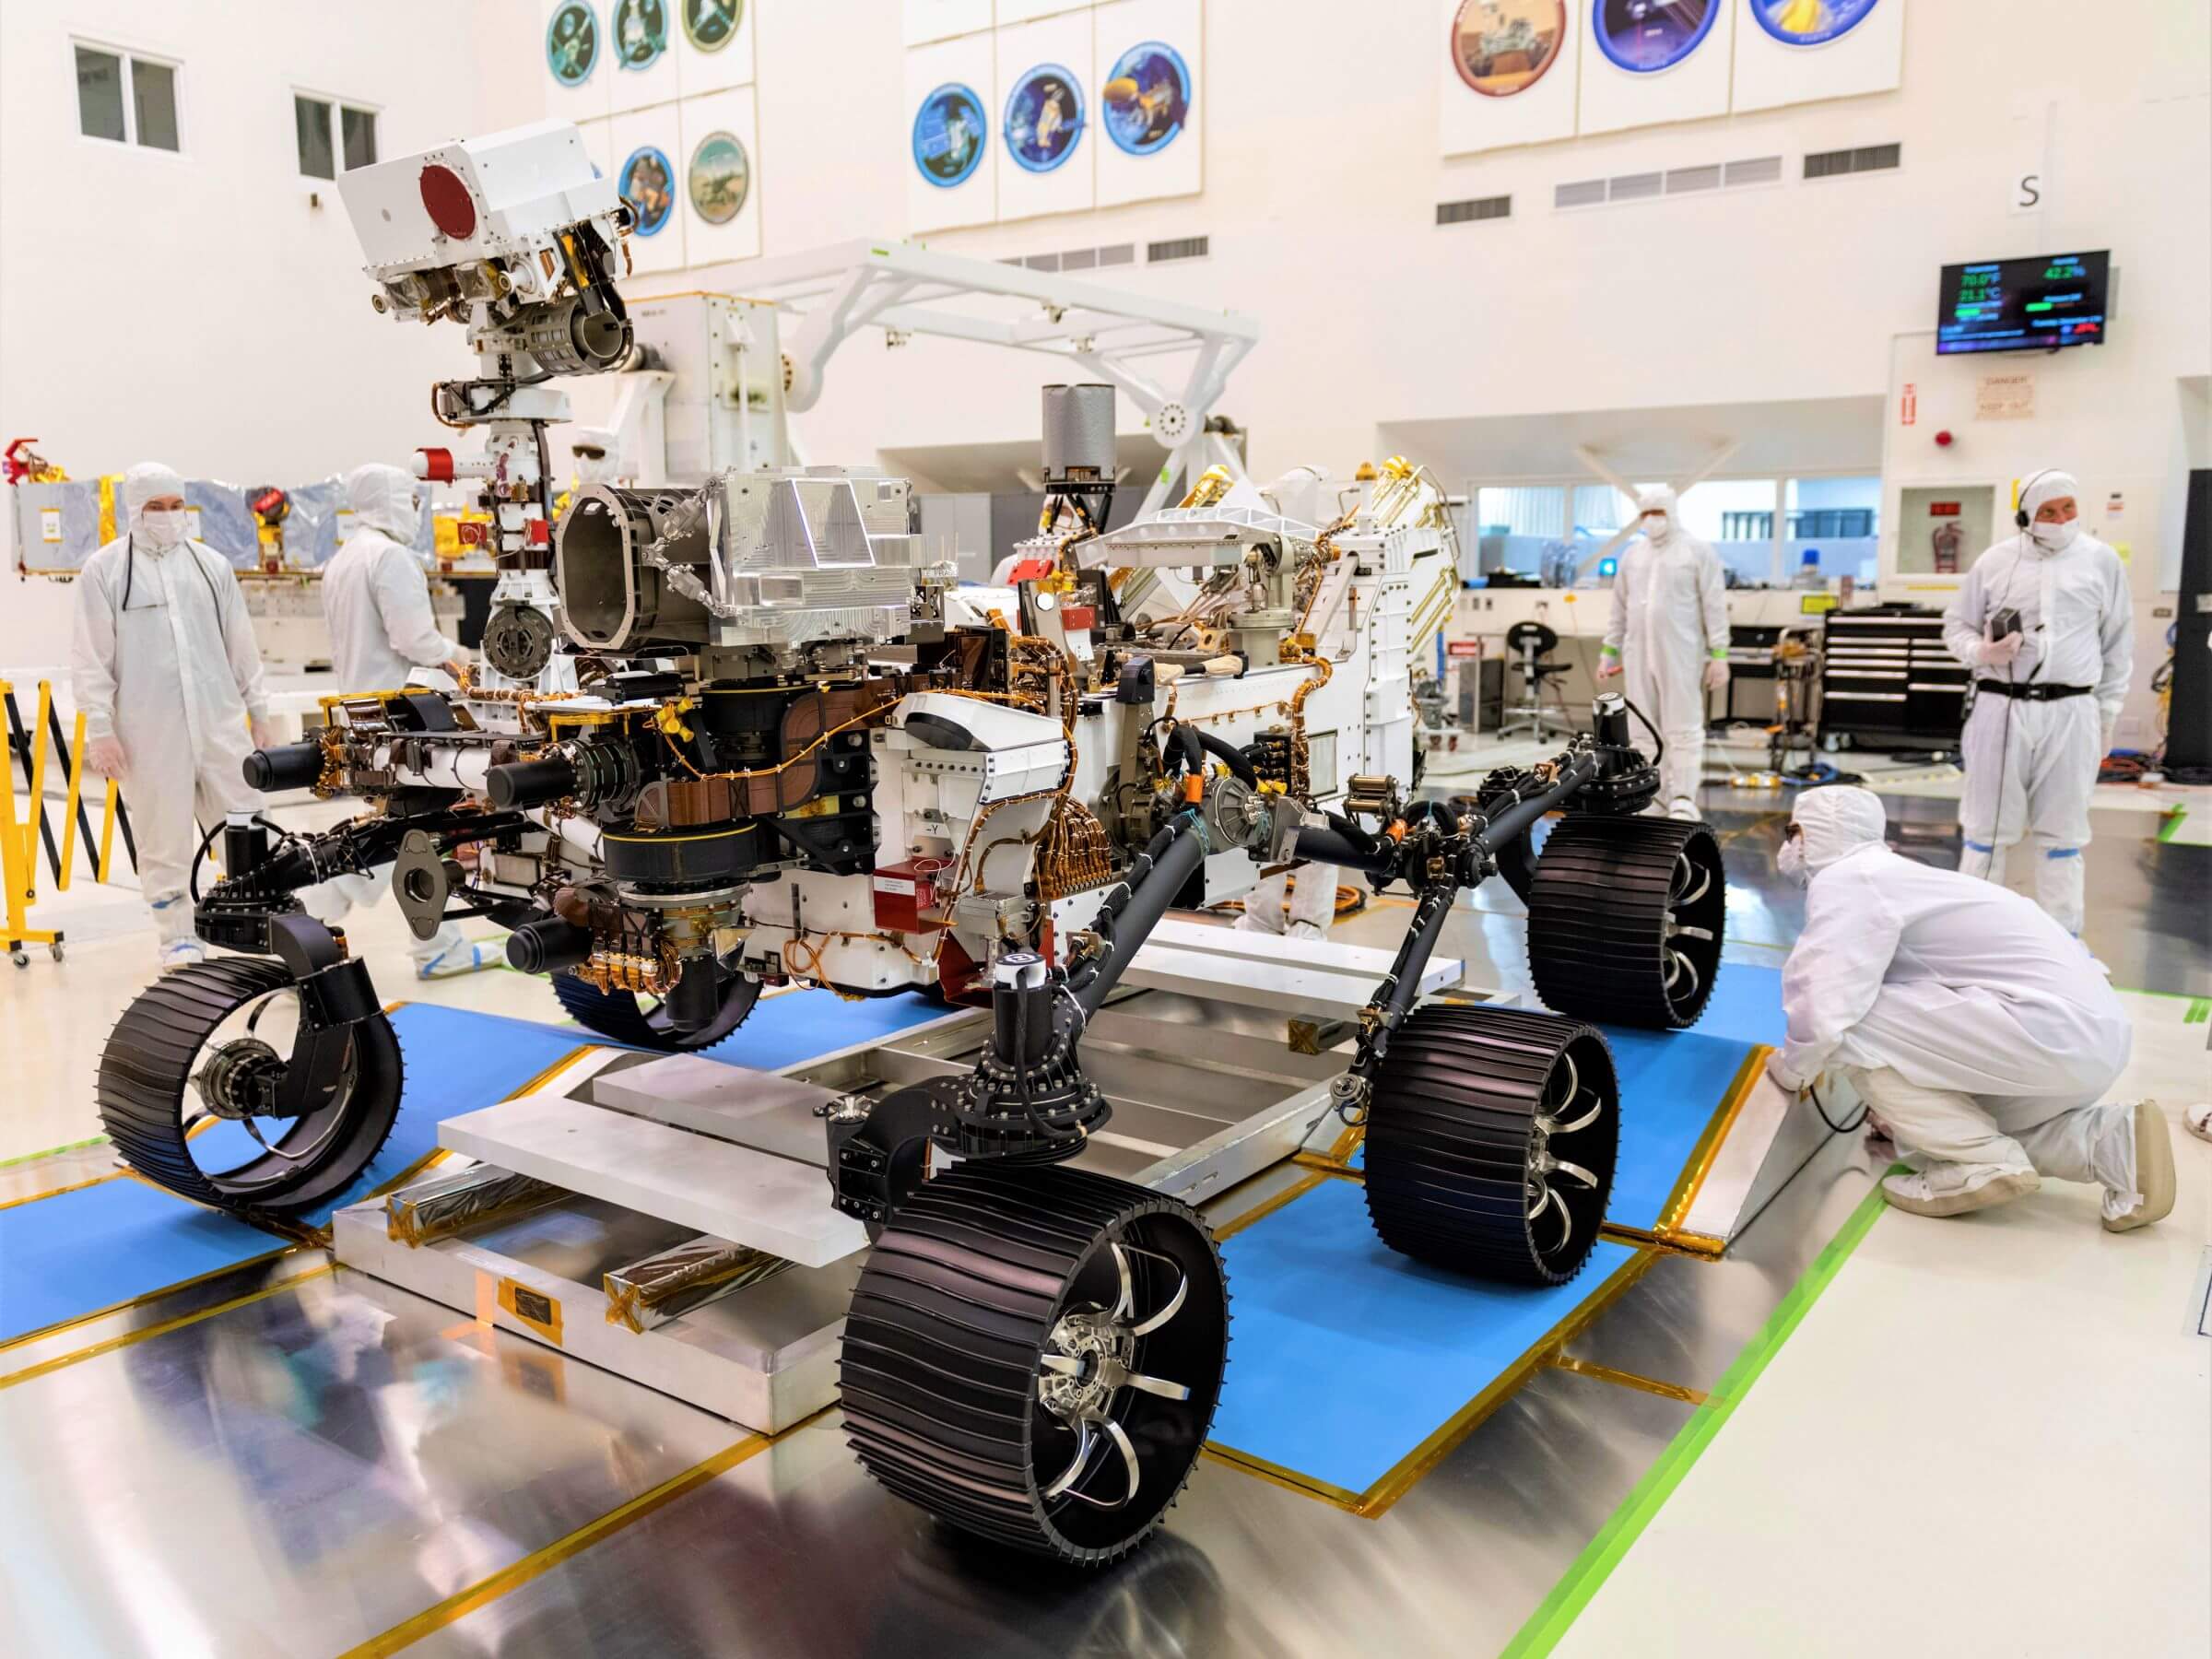 नासा के मंगल ग्रह के लिए भेज देंगे तंत्र की दृढ़ता के लिए ऑक्सीजन का उत्पादन